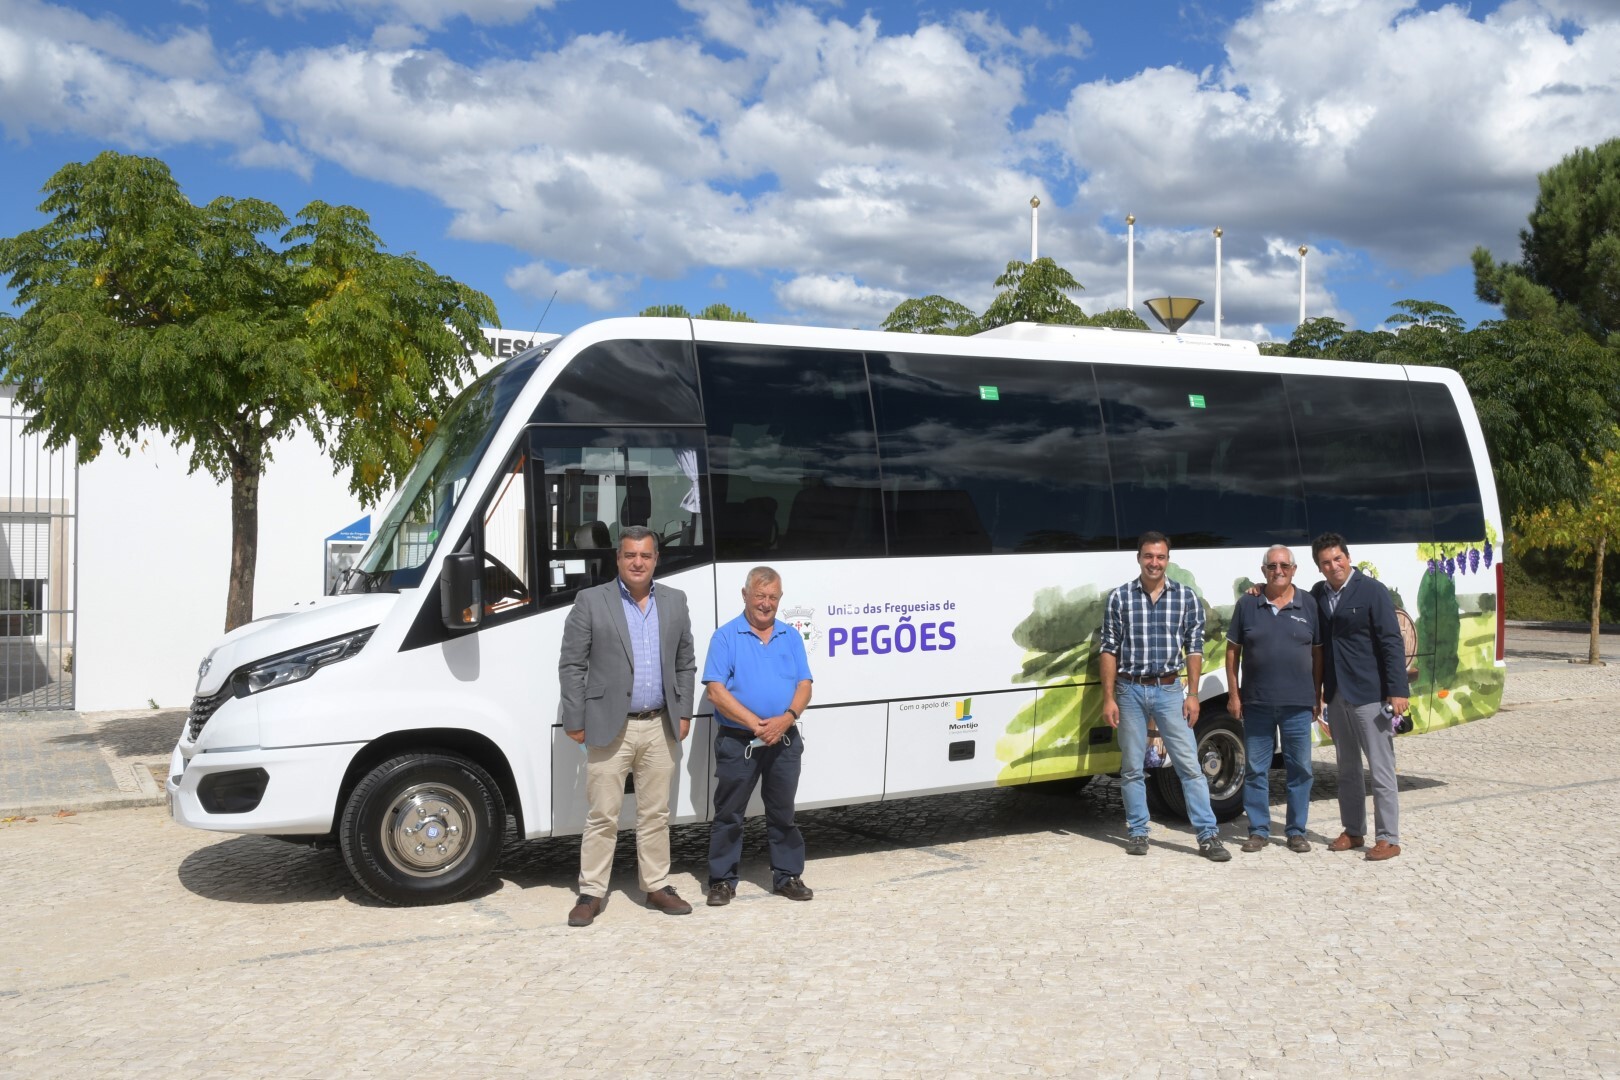 União de Freguesias de Pegões recebe autocarro para transporte de crianças